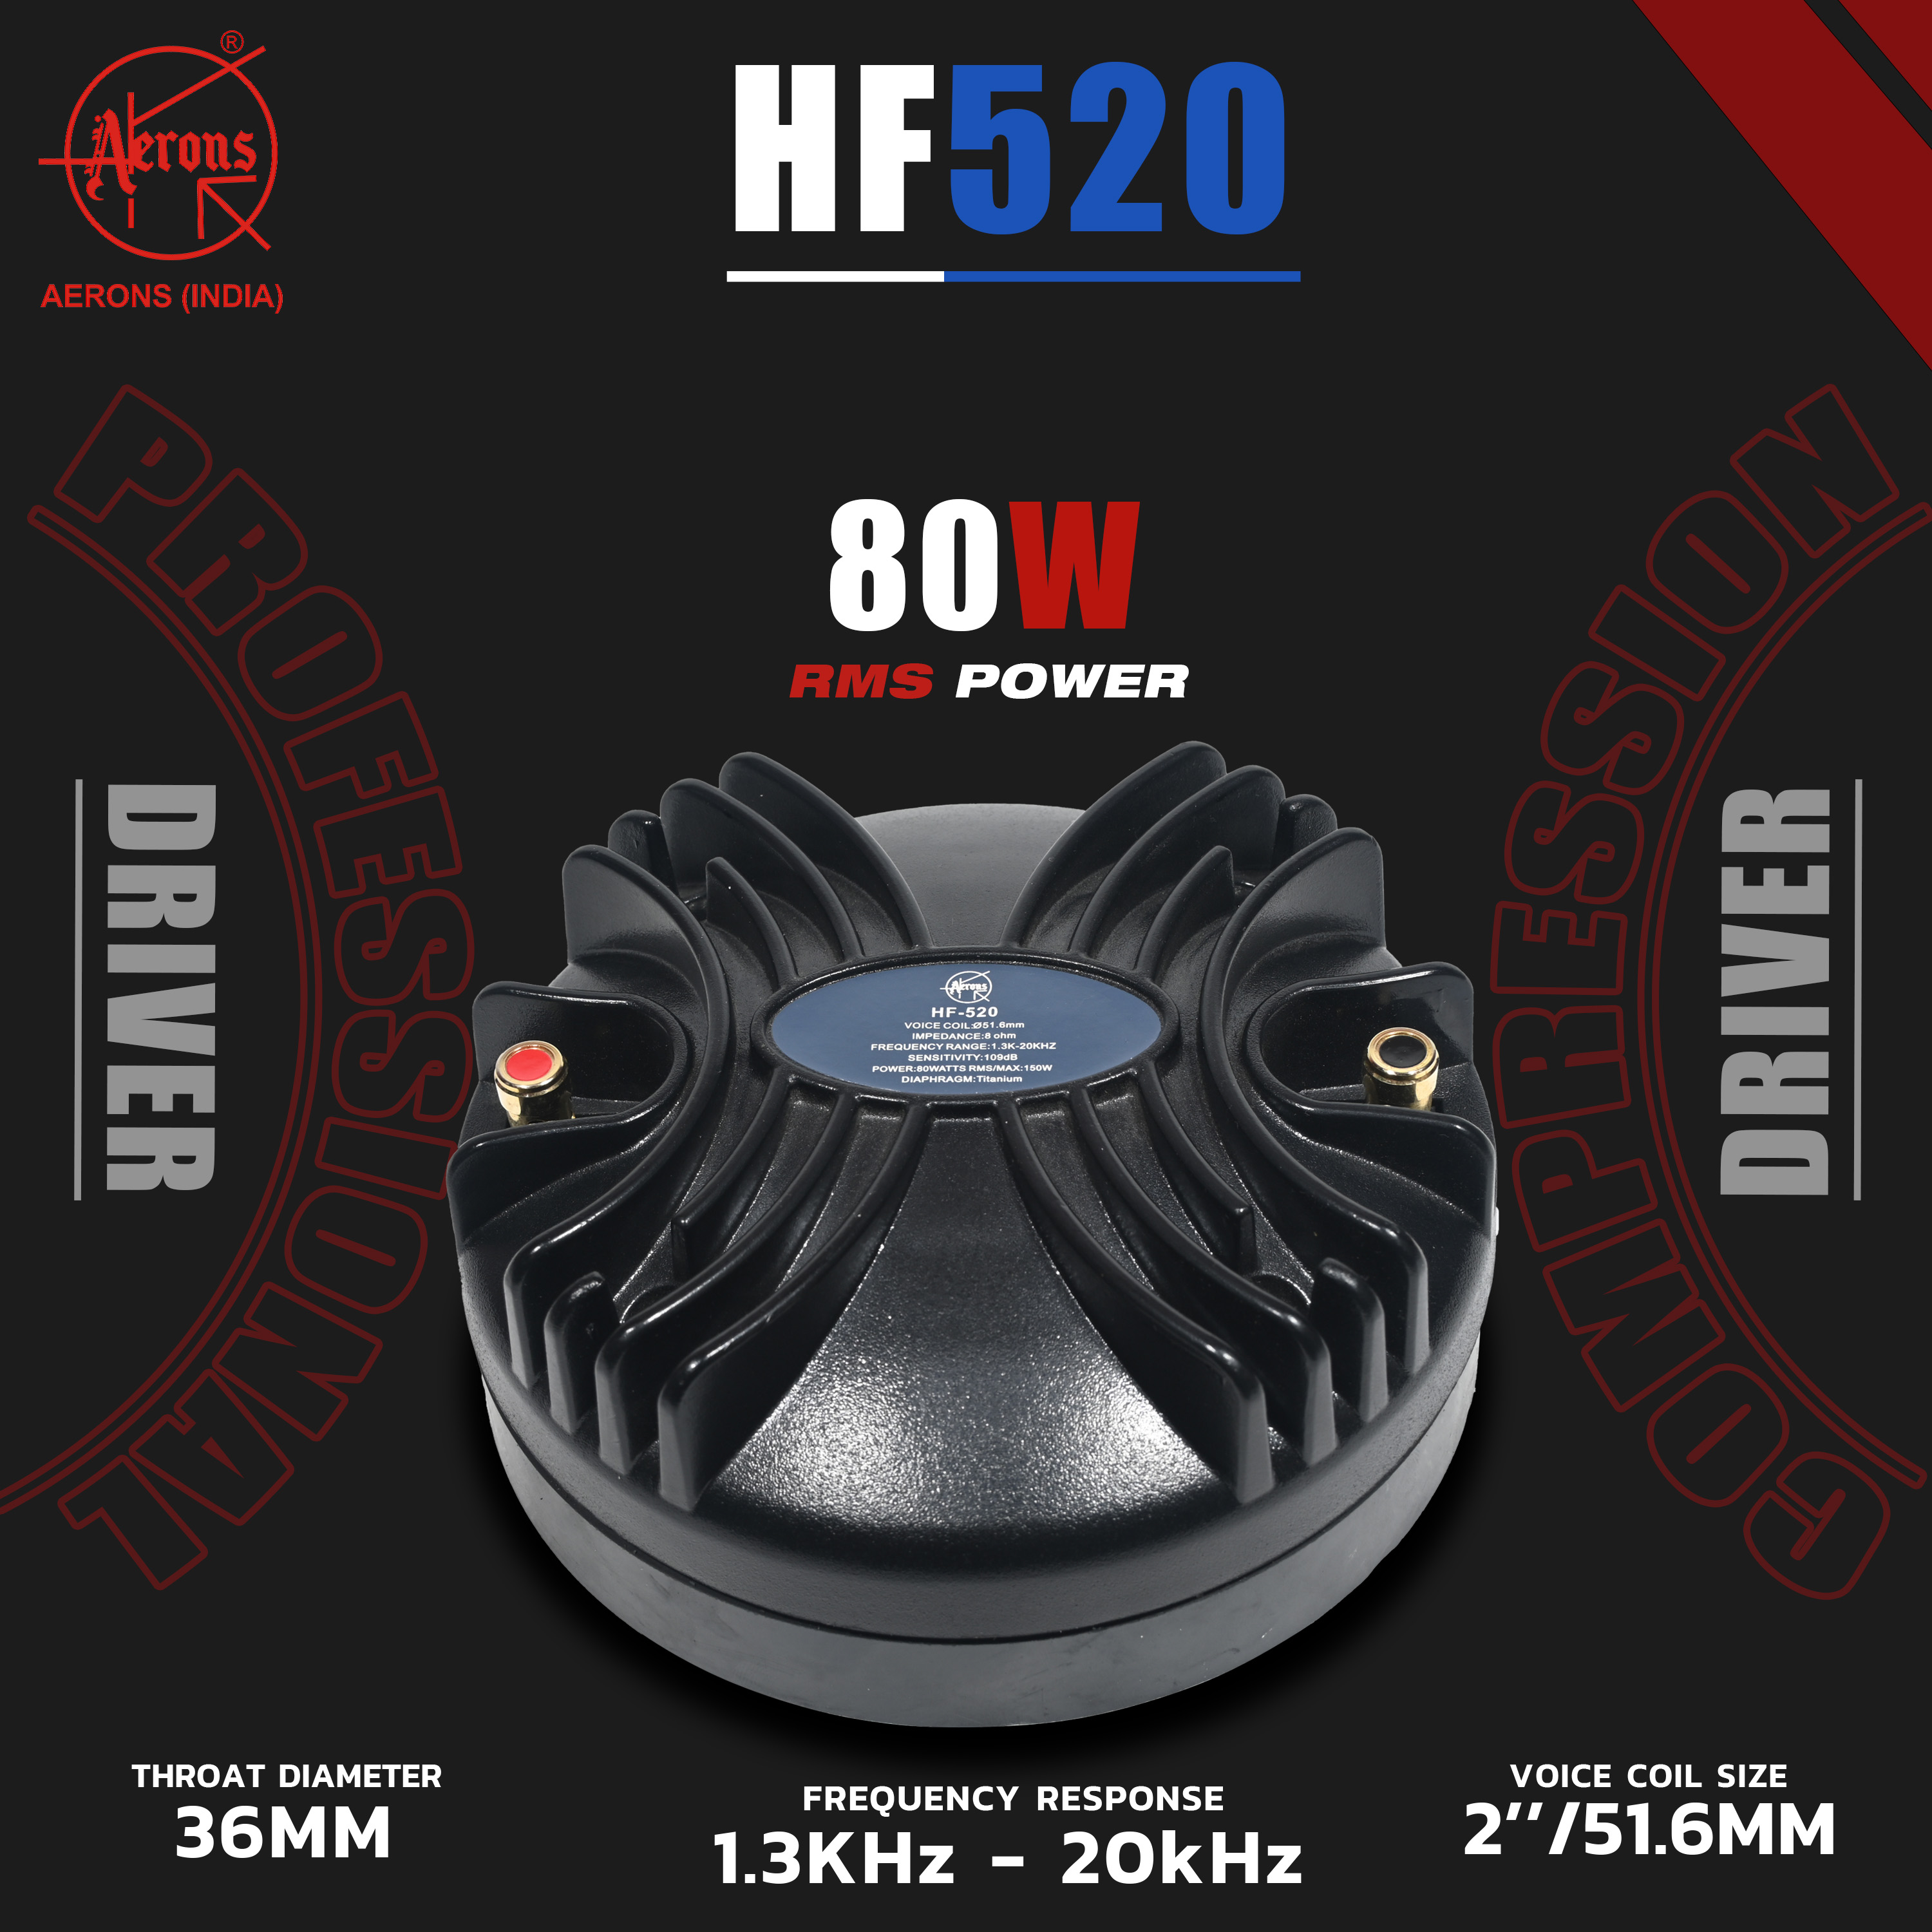 HF-520